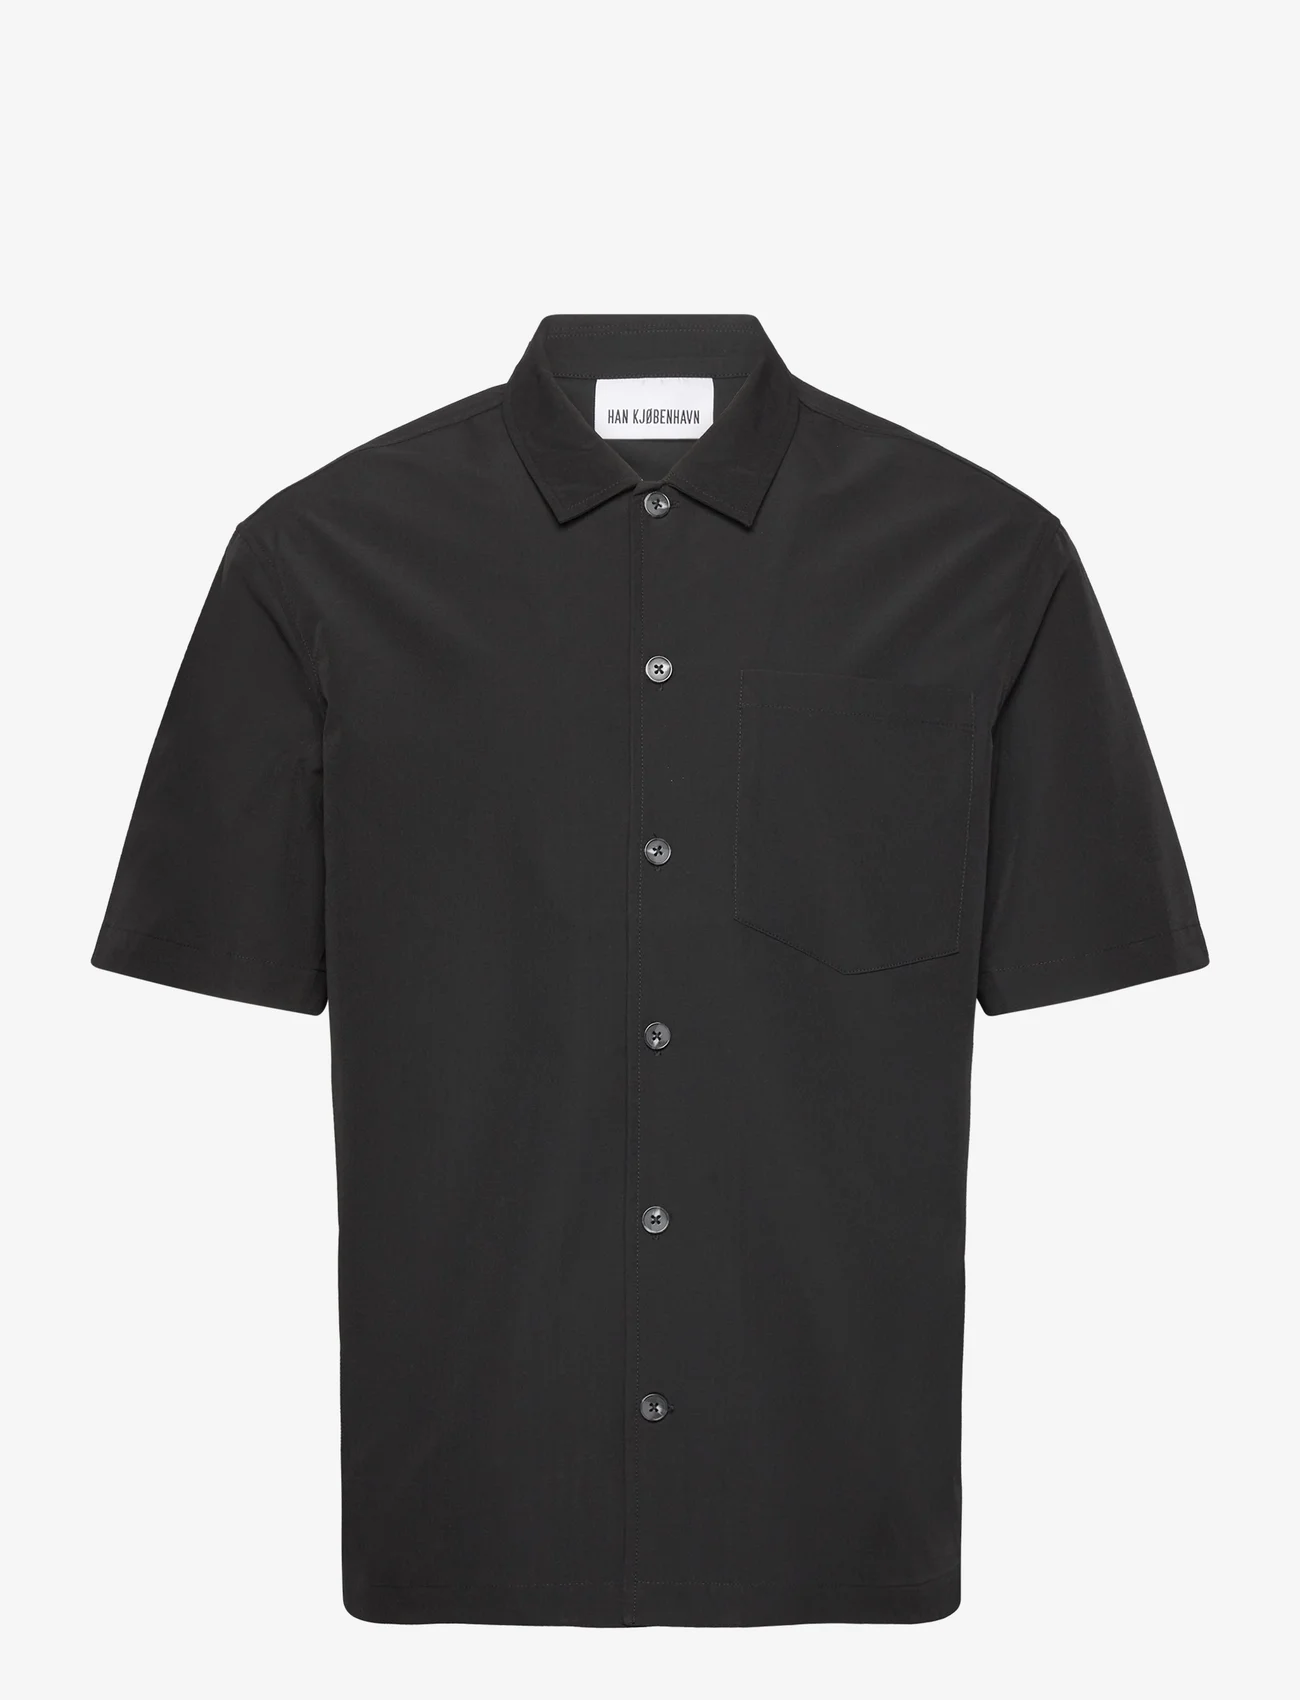 HAN Kjøbenhavn - Ripstop Summer Shirt - basic overhemden - black - 0